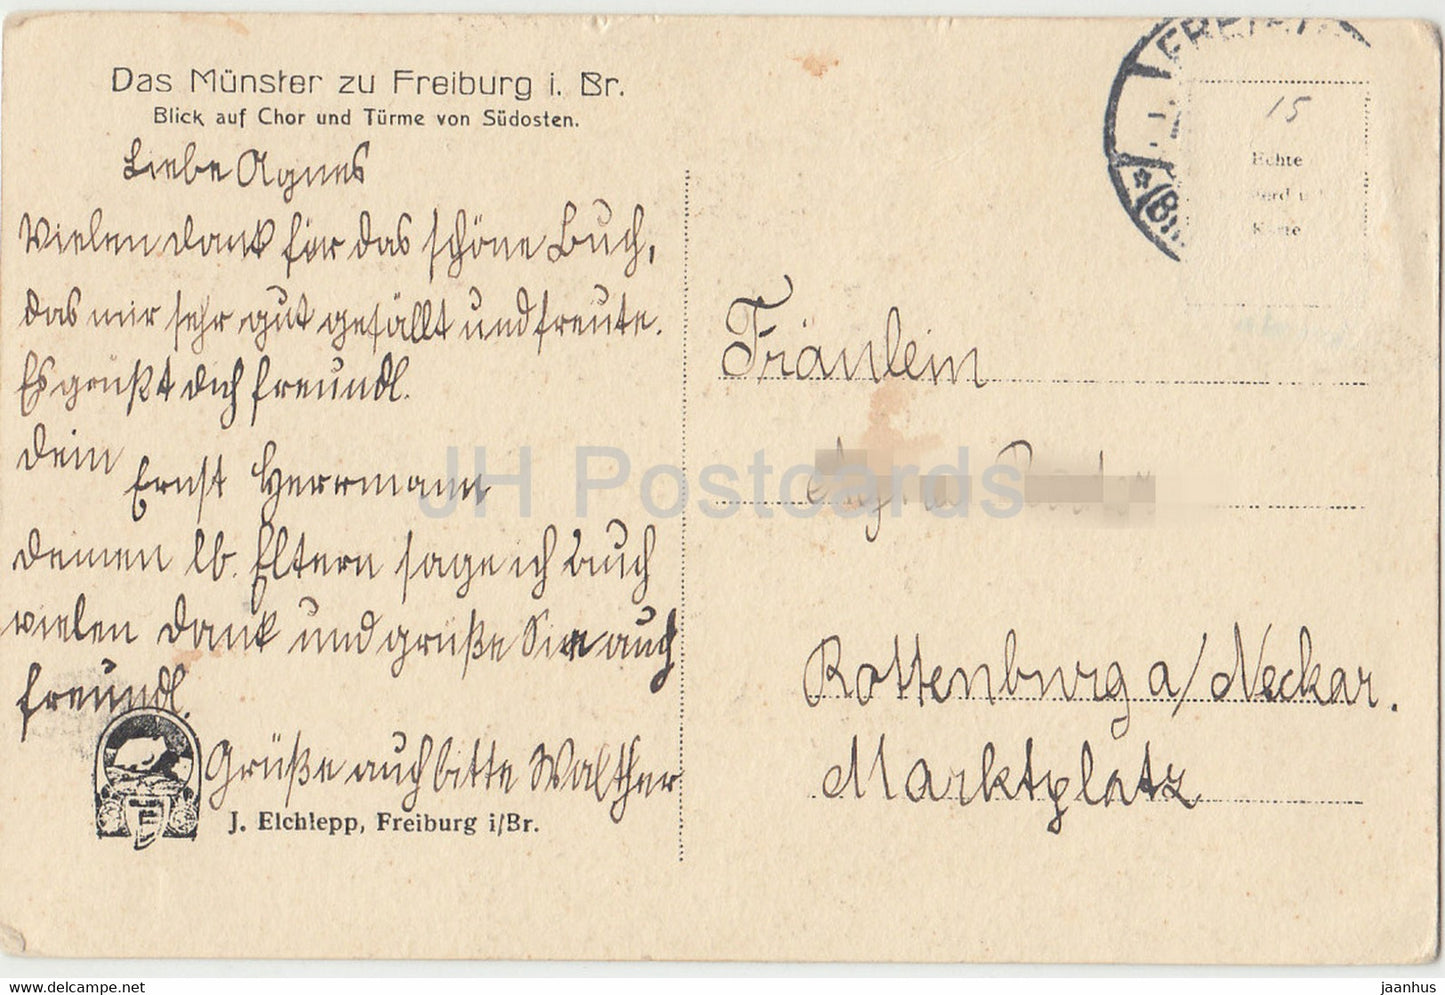 Das Münster zu Freiburg i Br - Dom - alte Postkarte - Deutschland - unbenutzt